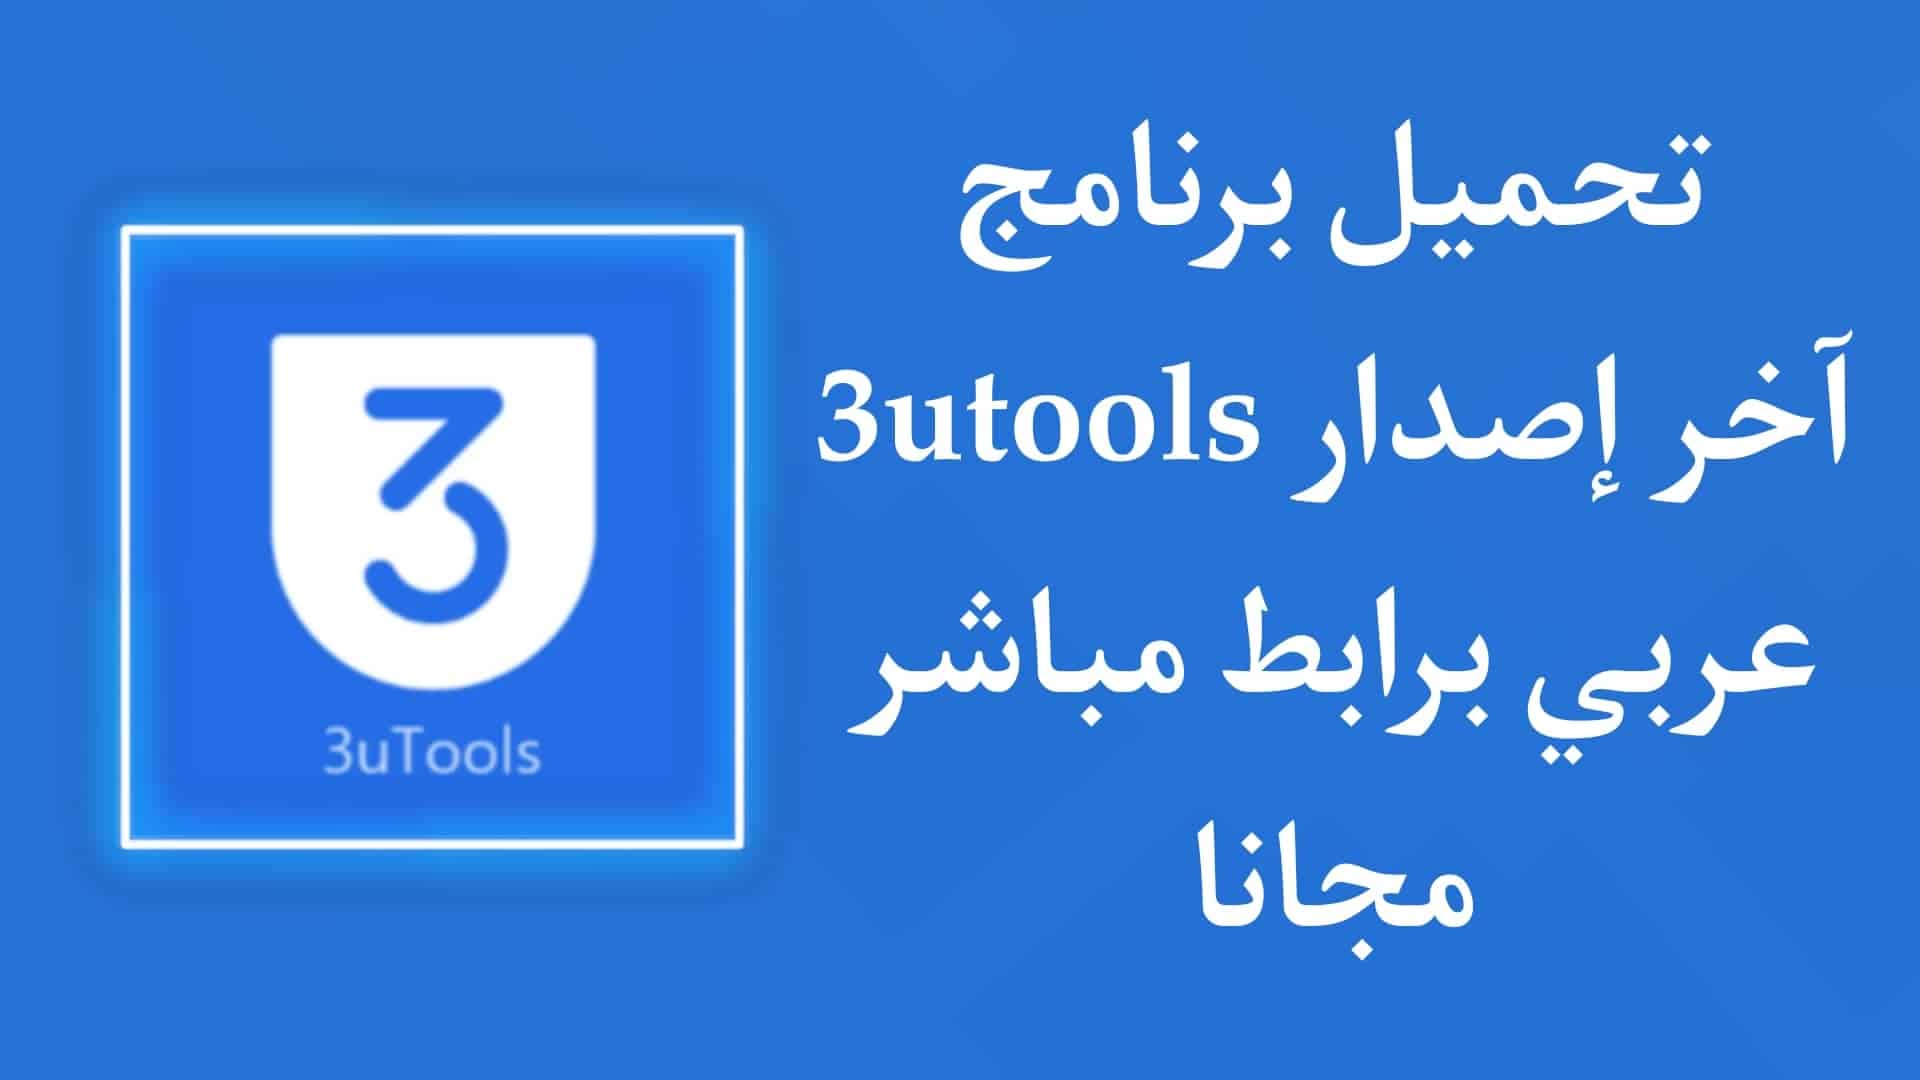 تحميل برنامج 3utools للكمبيوتر اخر اصدار عربي 32 bit